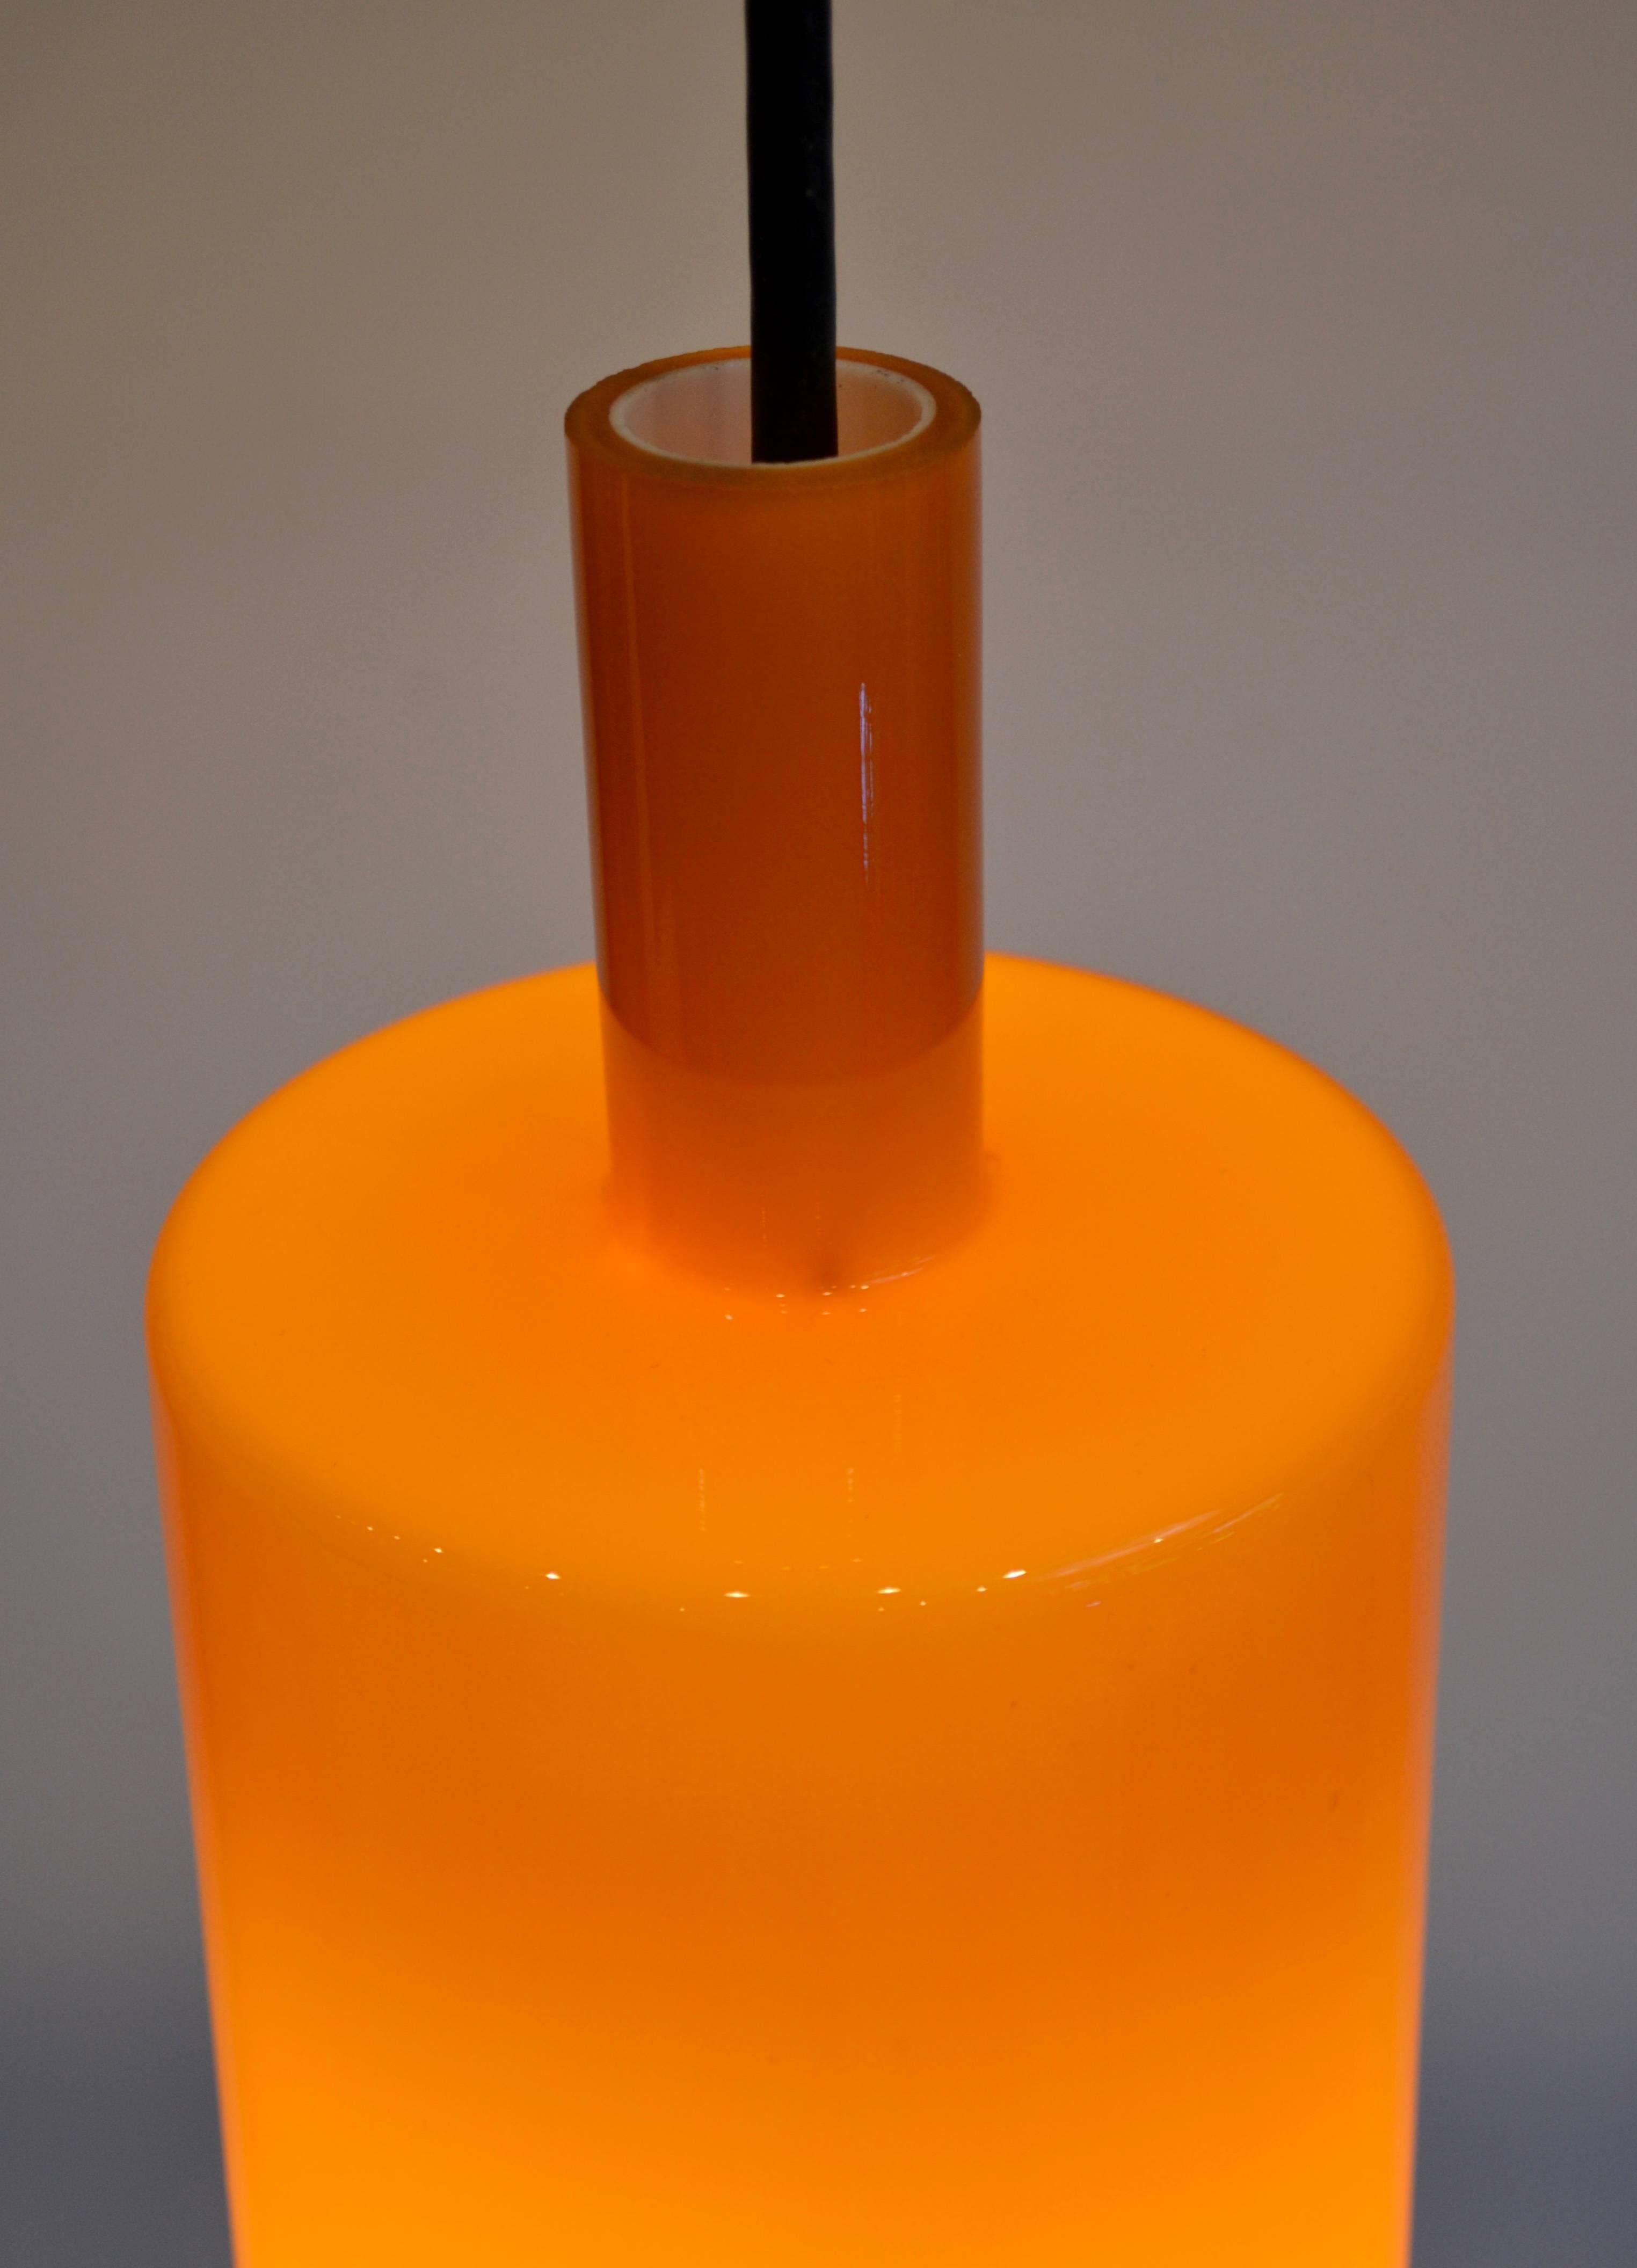 Wunderschöne dänische Pendelleuchte aus orangefarbenem Glas, entworfen von Jo Hammerborg für Fog and Mørup. 1968 wurde diese Leuchte im Katalog von F und M gezeigt. Das Glas hat eine opalartige Innenseite, die das Licht streut und weicher macht.